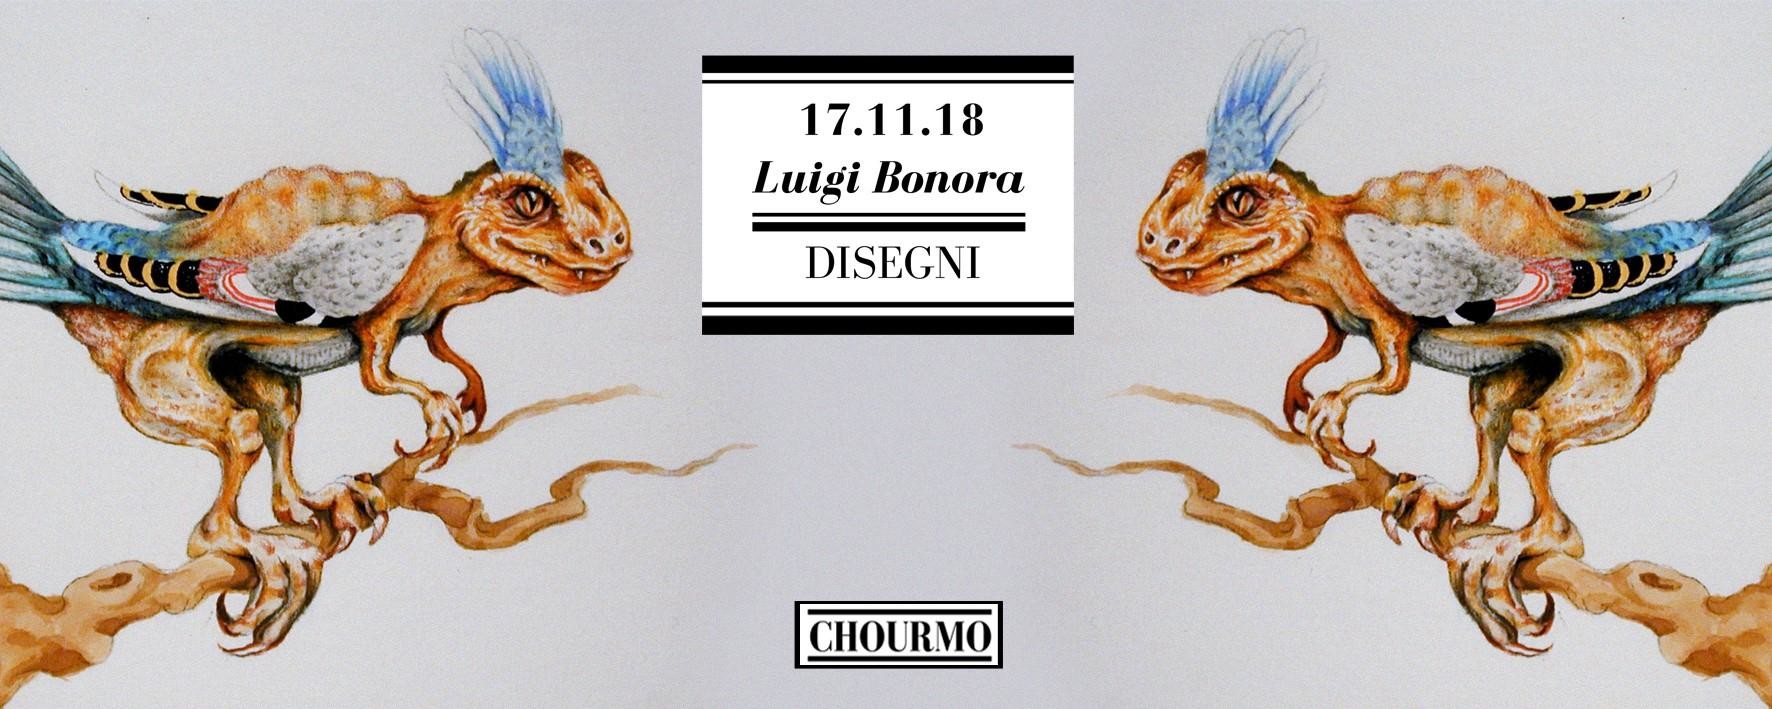 Luigi Bonora "Disegni" da Chourmo